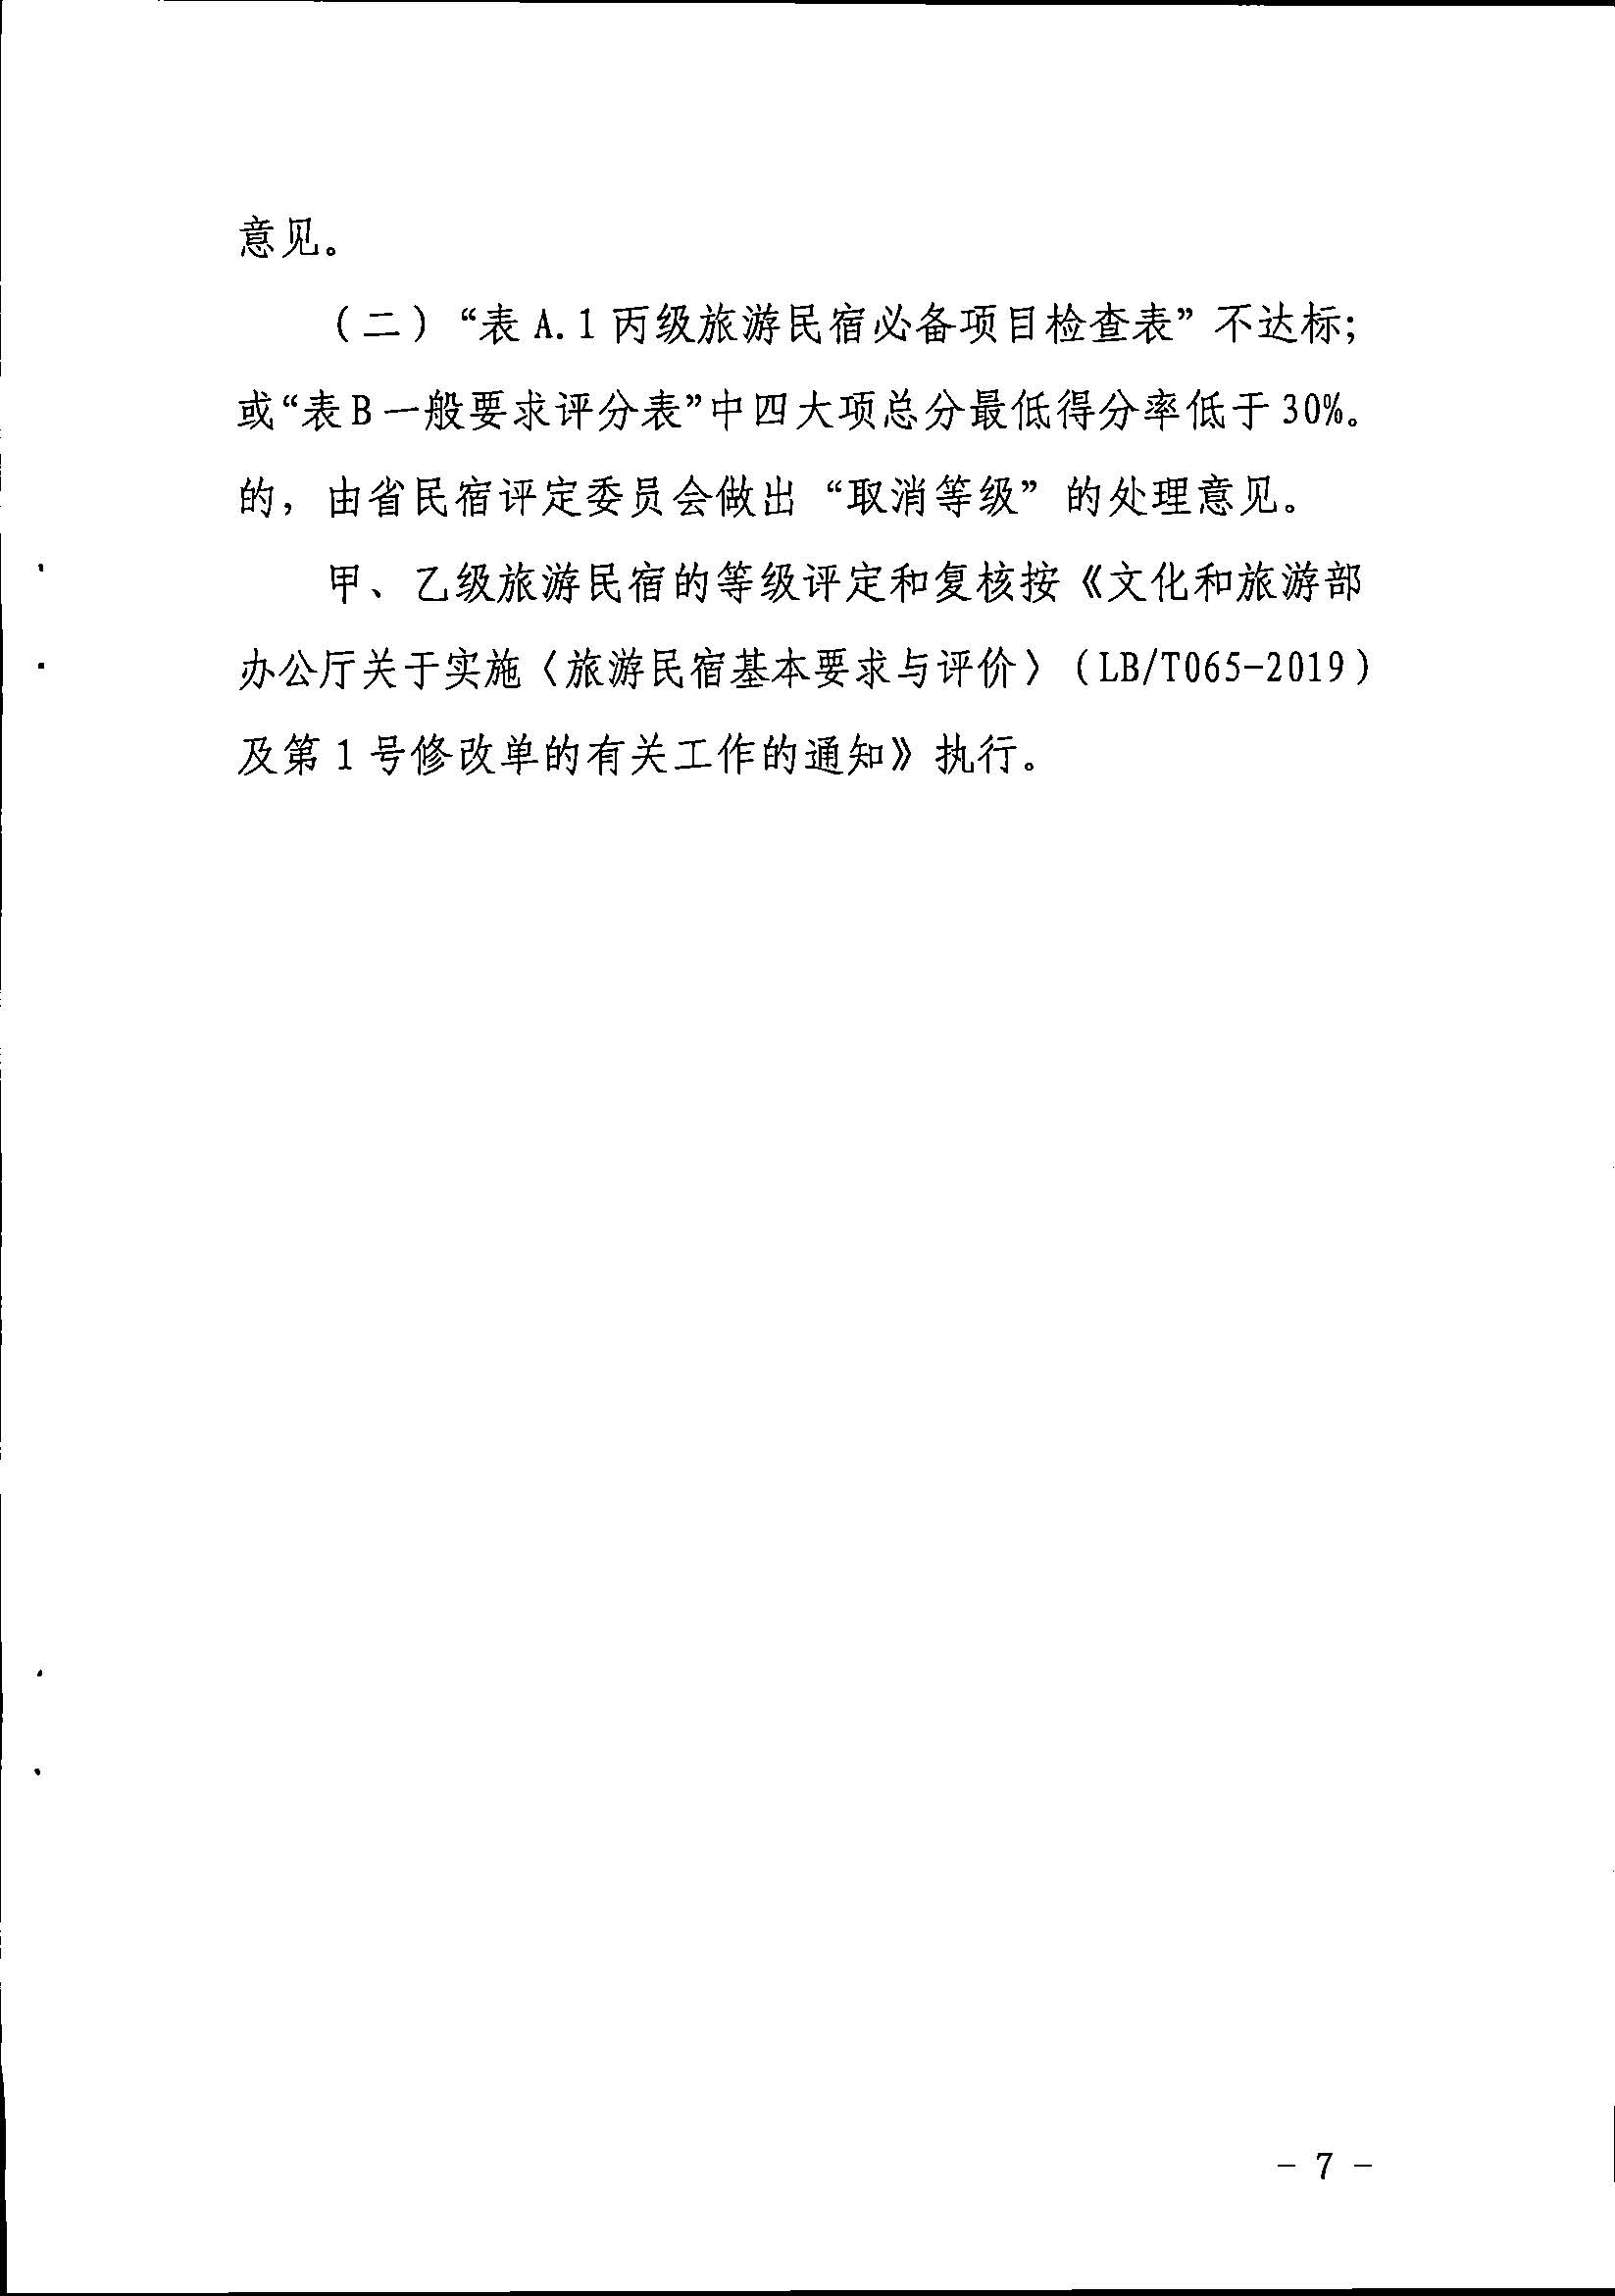 广东省旅游民宿等级评定和复核工作规程_页面_7.jpg